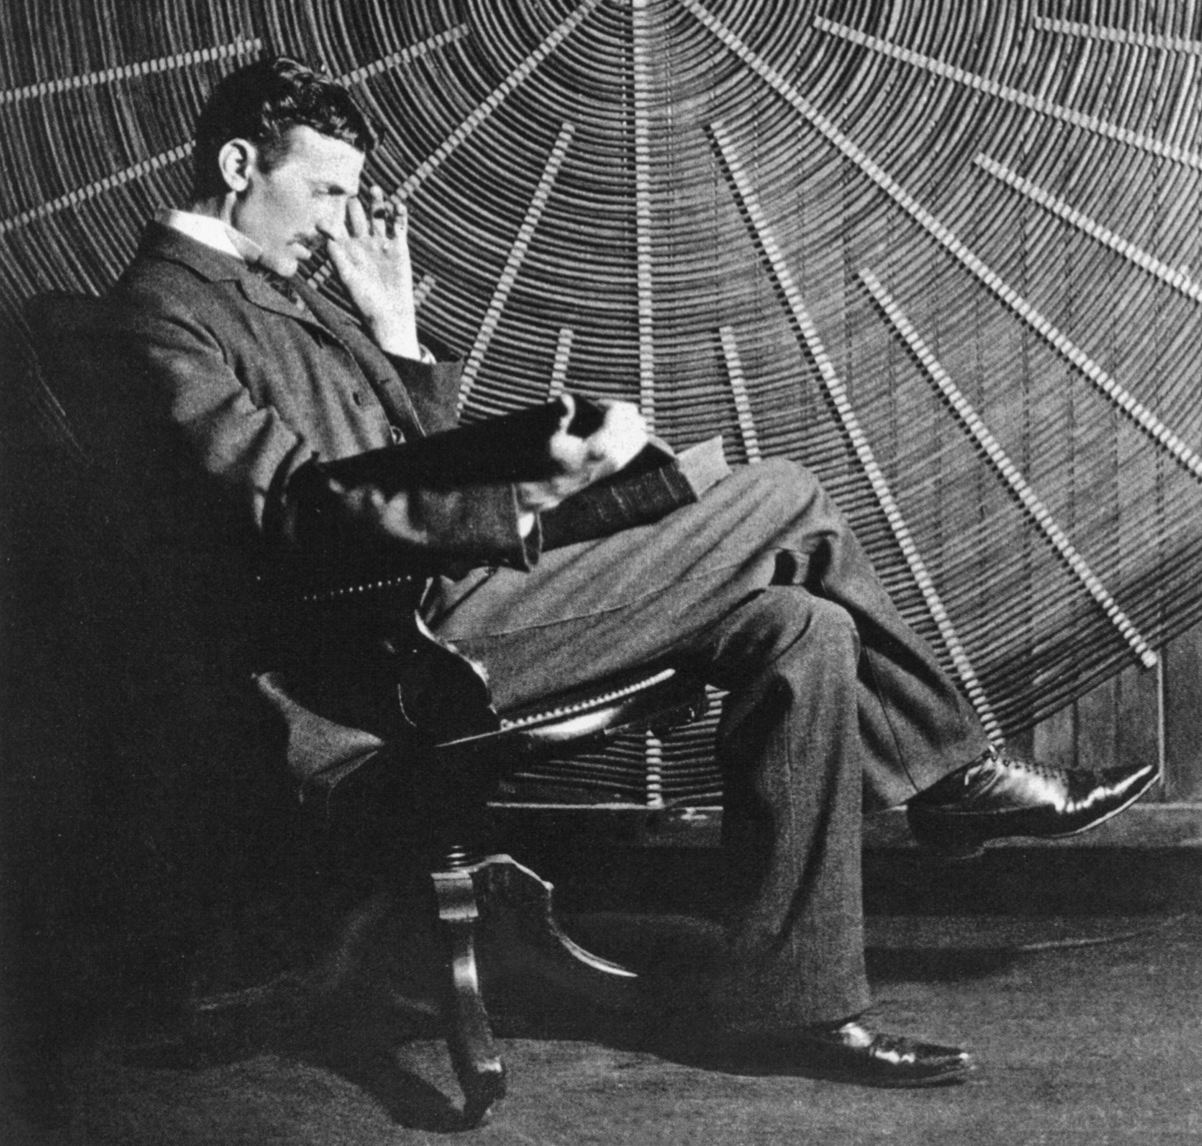 Nikola Tesla, inventor alternating current electricity transmission system